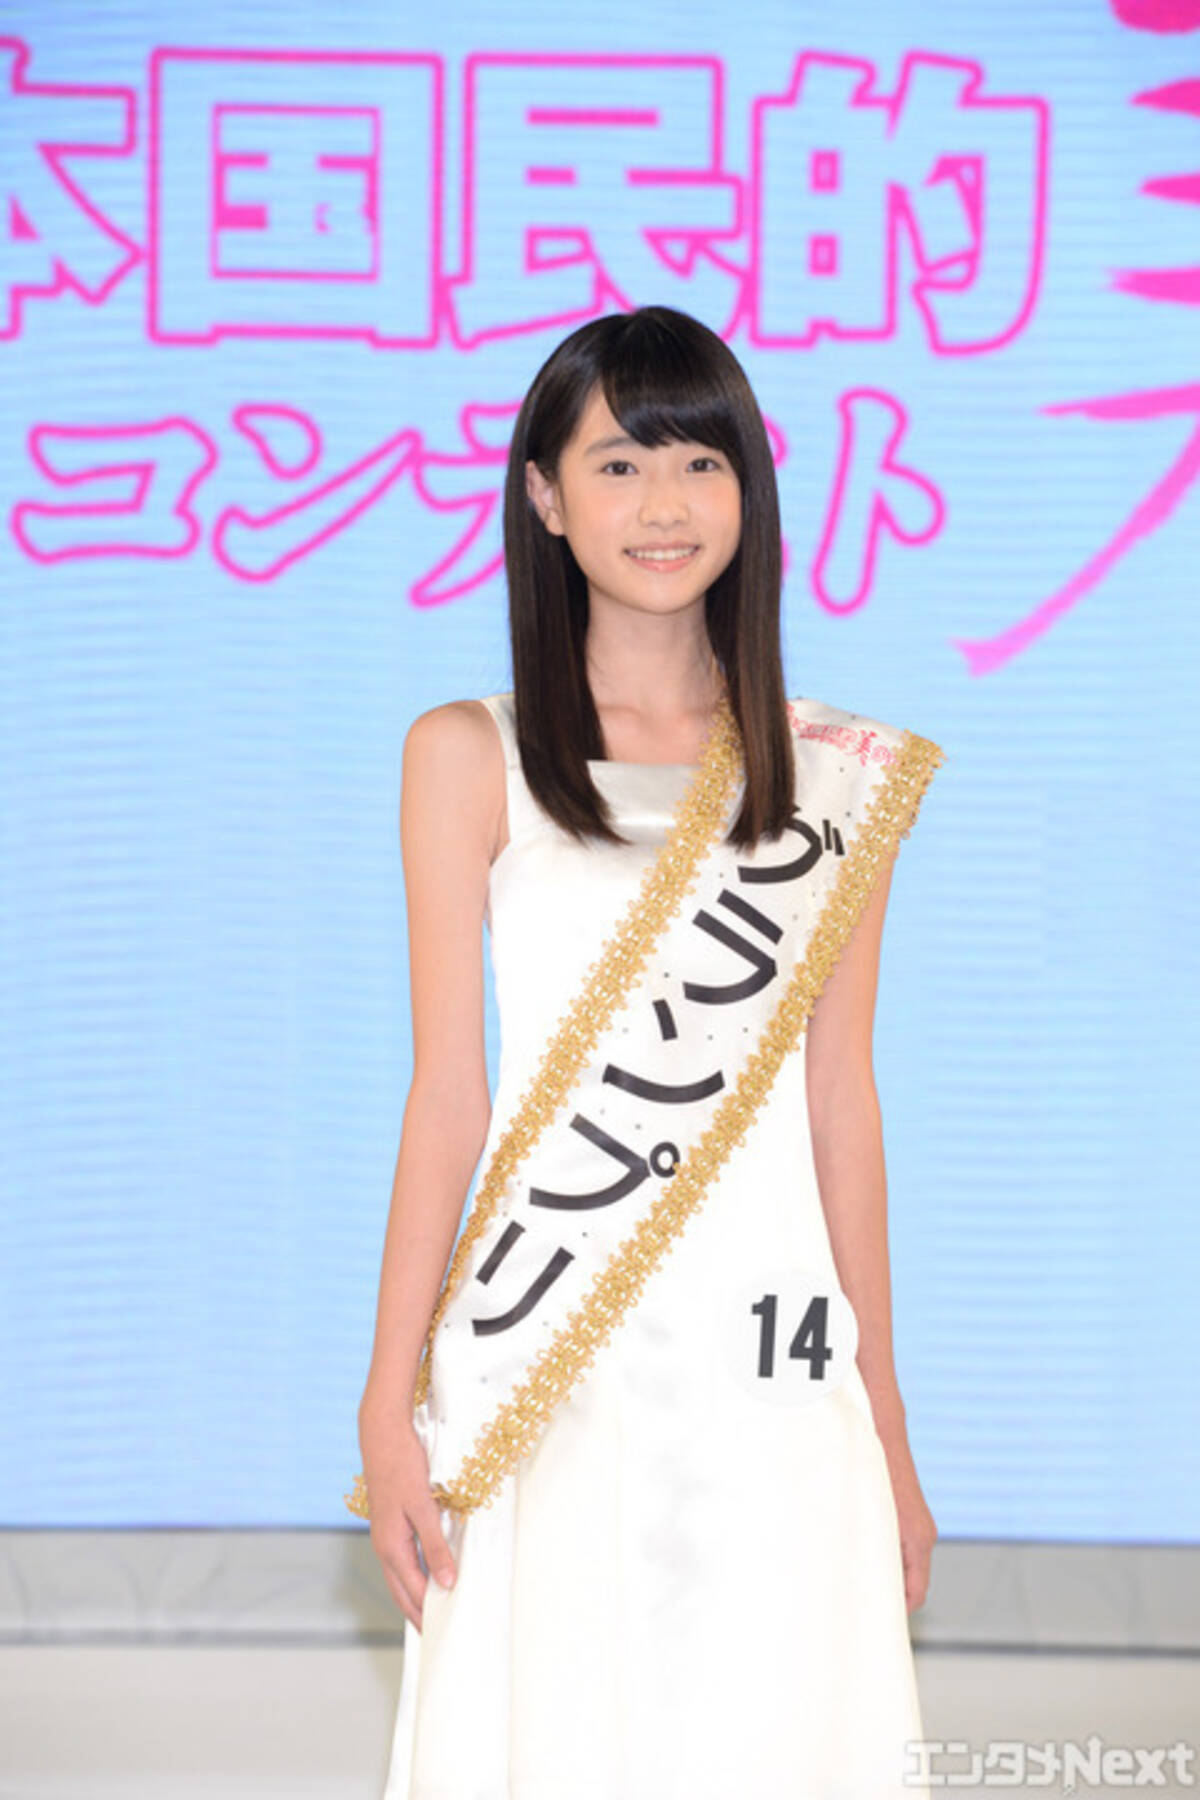 81 031の頂点 滋賀県出身の12歳が 国民的美少女 に決定 14年8月6日 エキサイトニュース